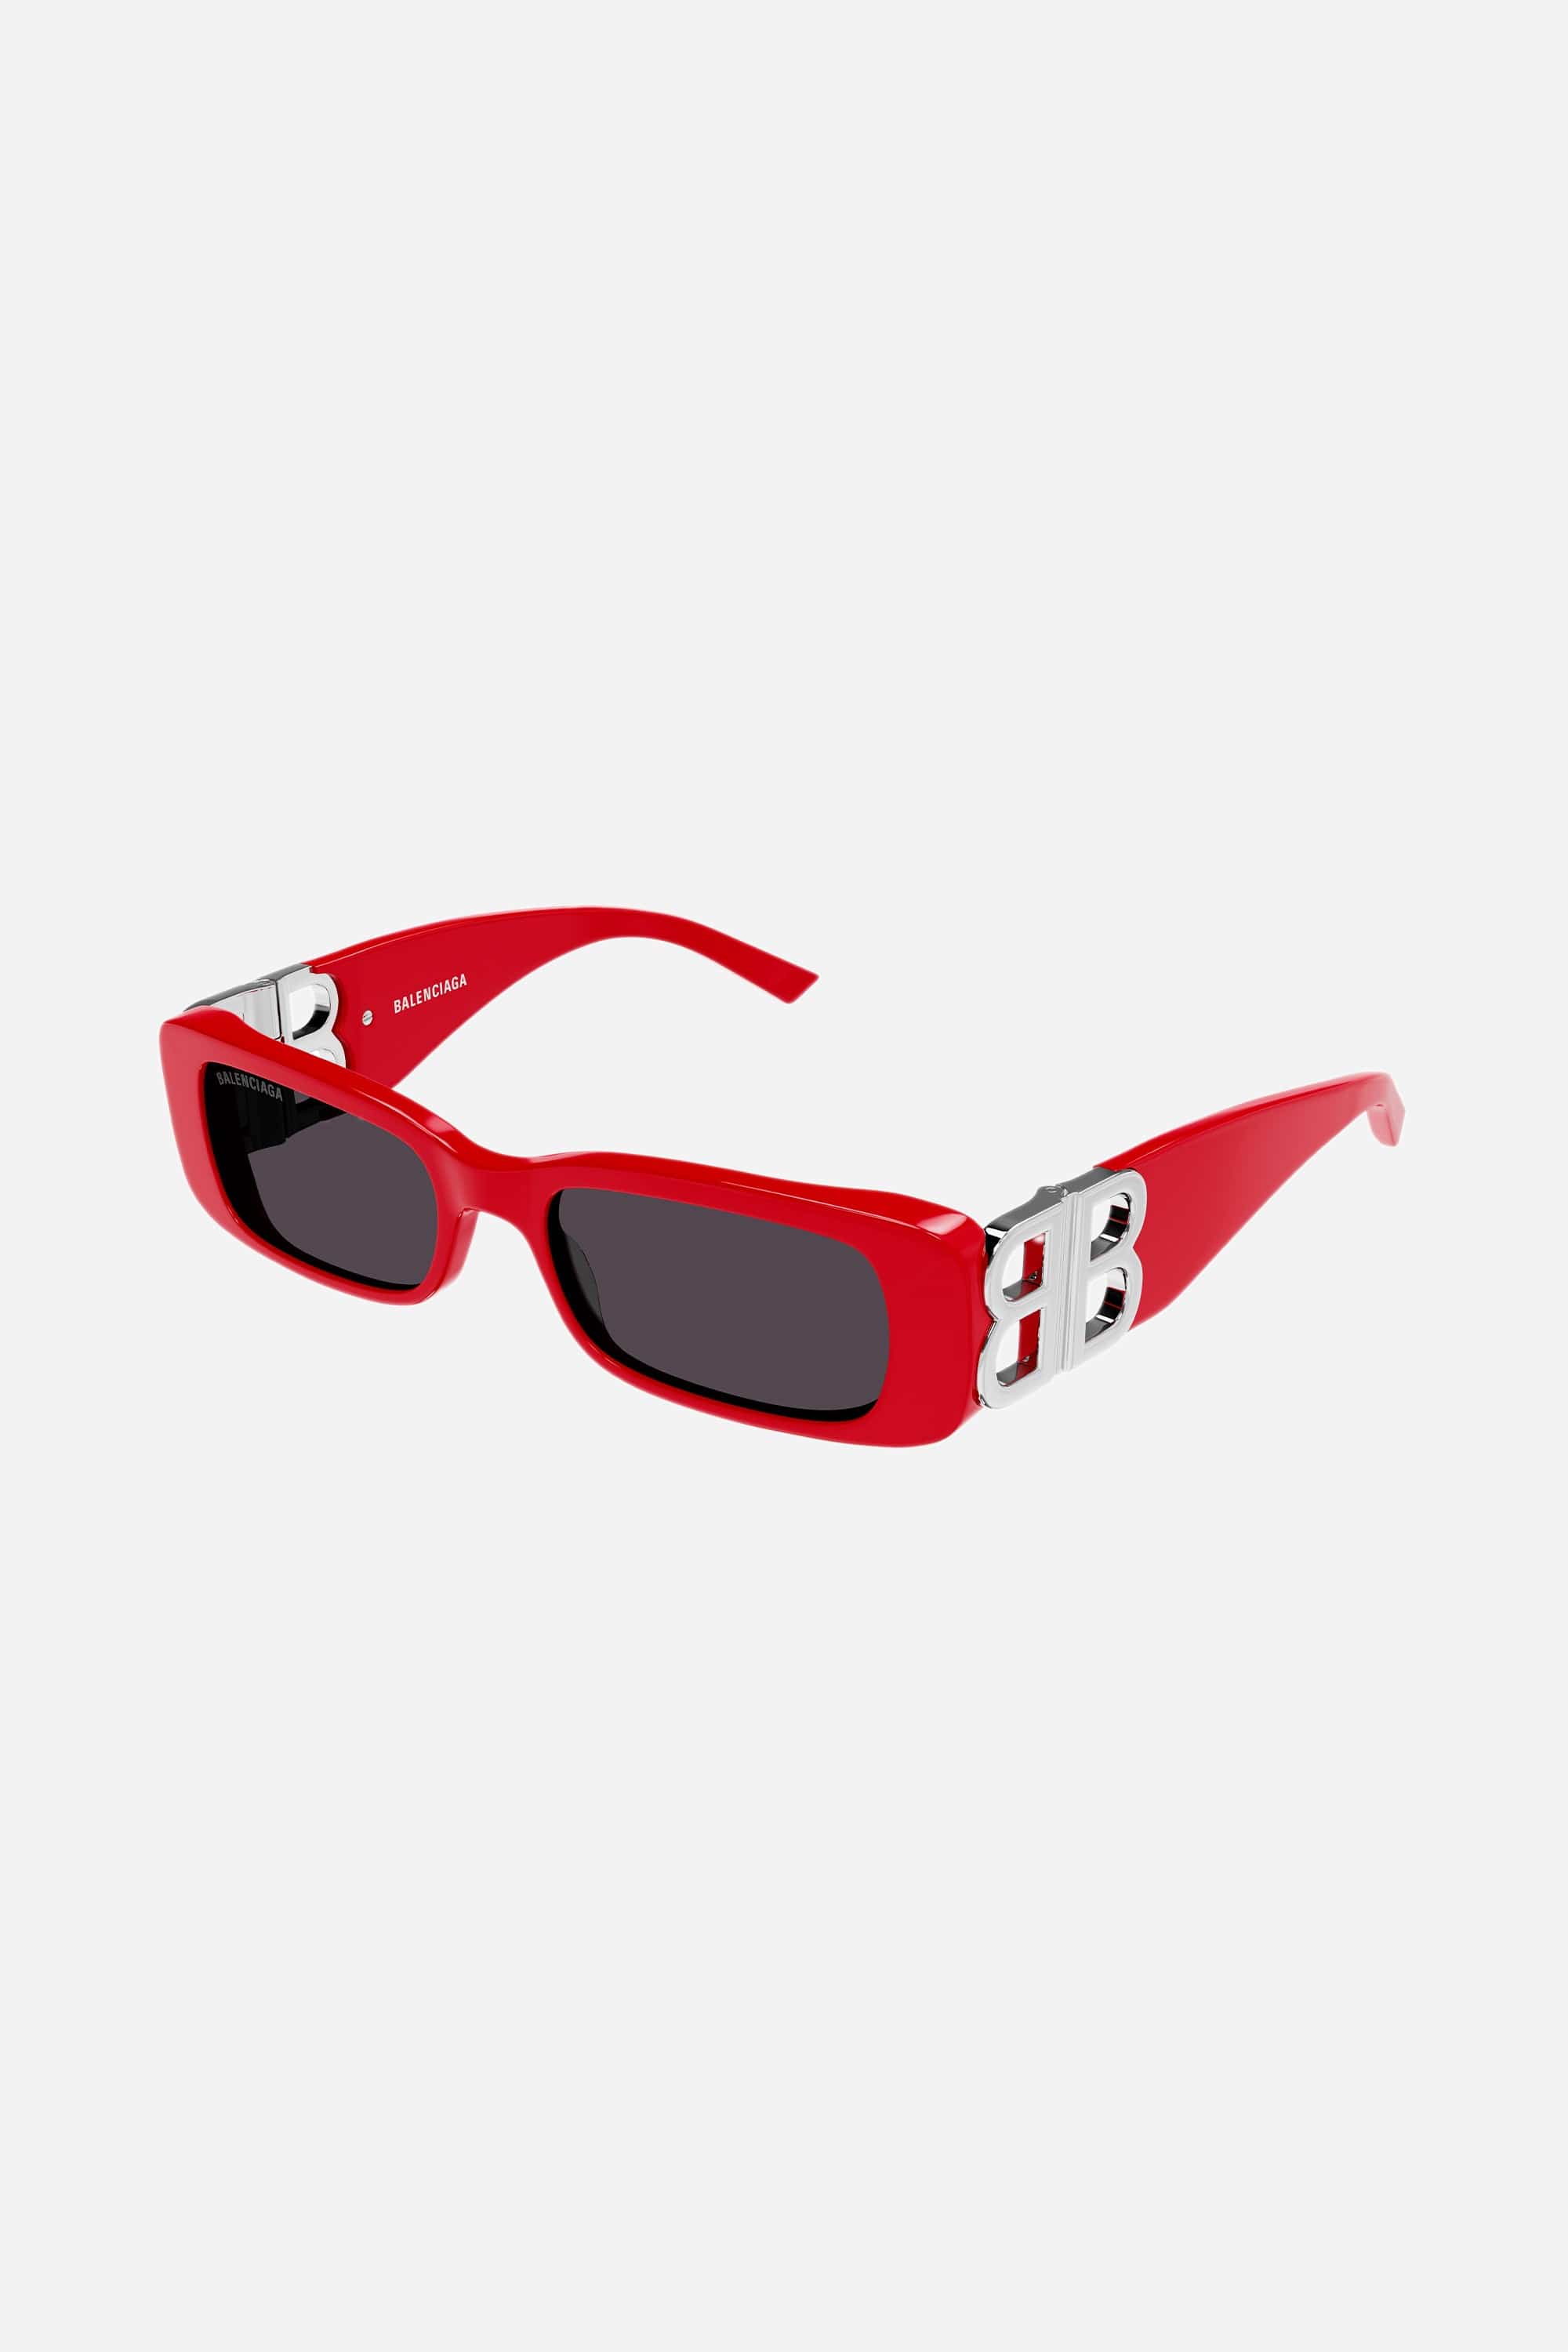 Balenciaga Dynasty red sunglasses featuring BB logo - Eyewear Club